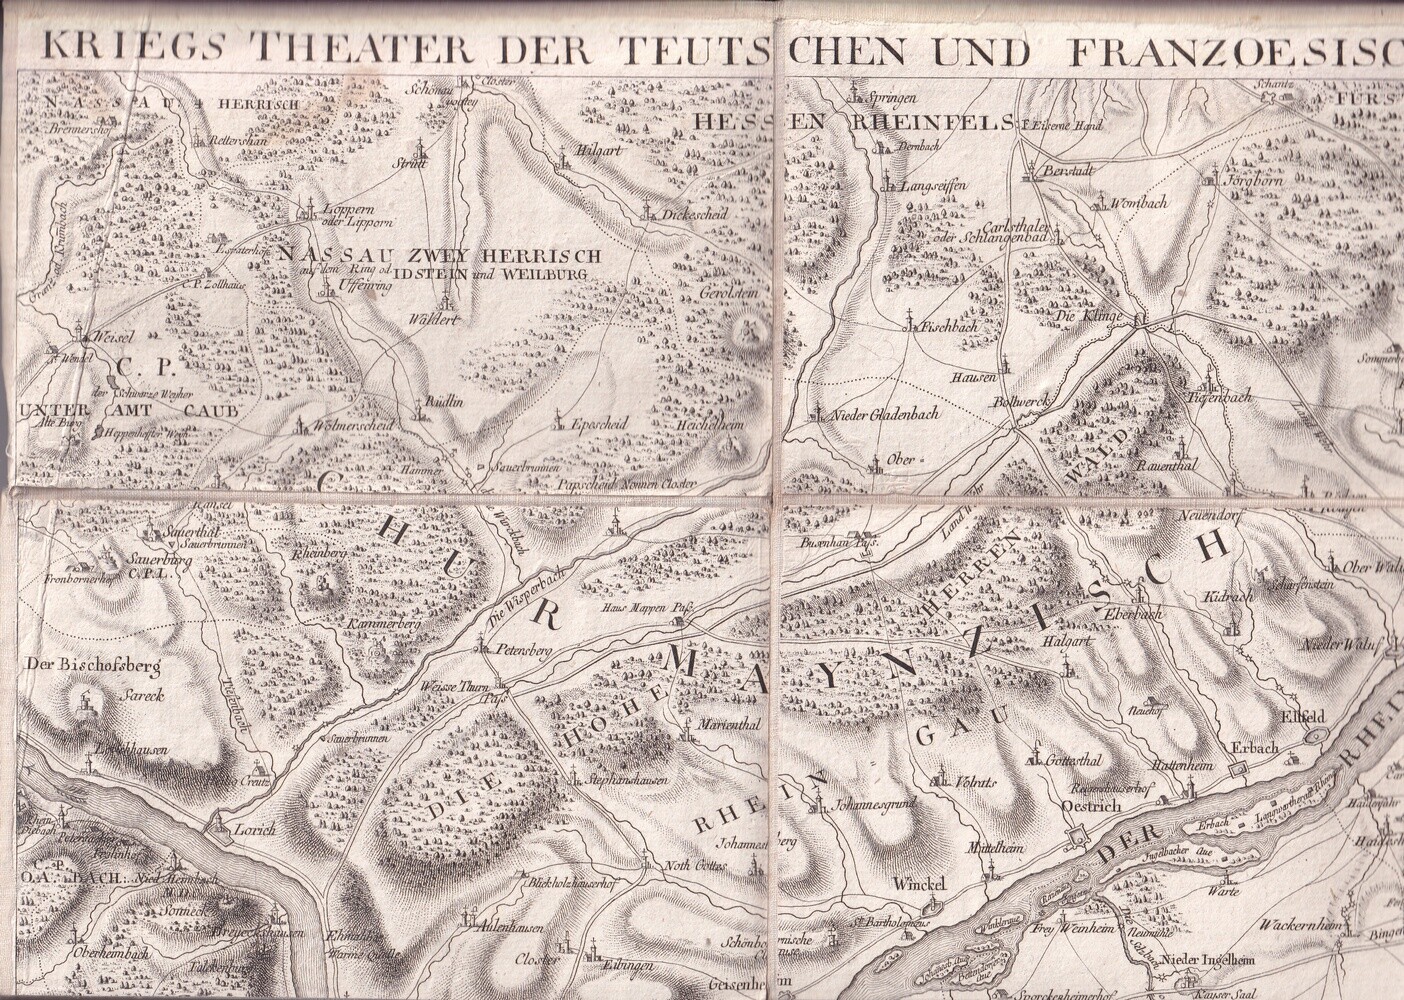 Kriegs-Theater Der Teutschen Und Franzoesischen Graenzlanden 1794 (Kulturverein Guntersblum CC BY-NC-SA)